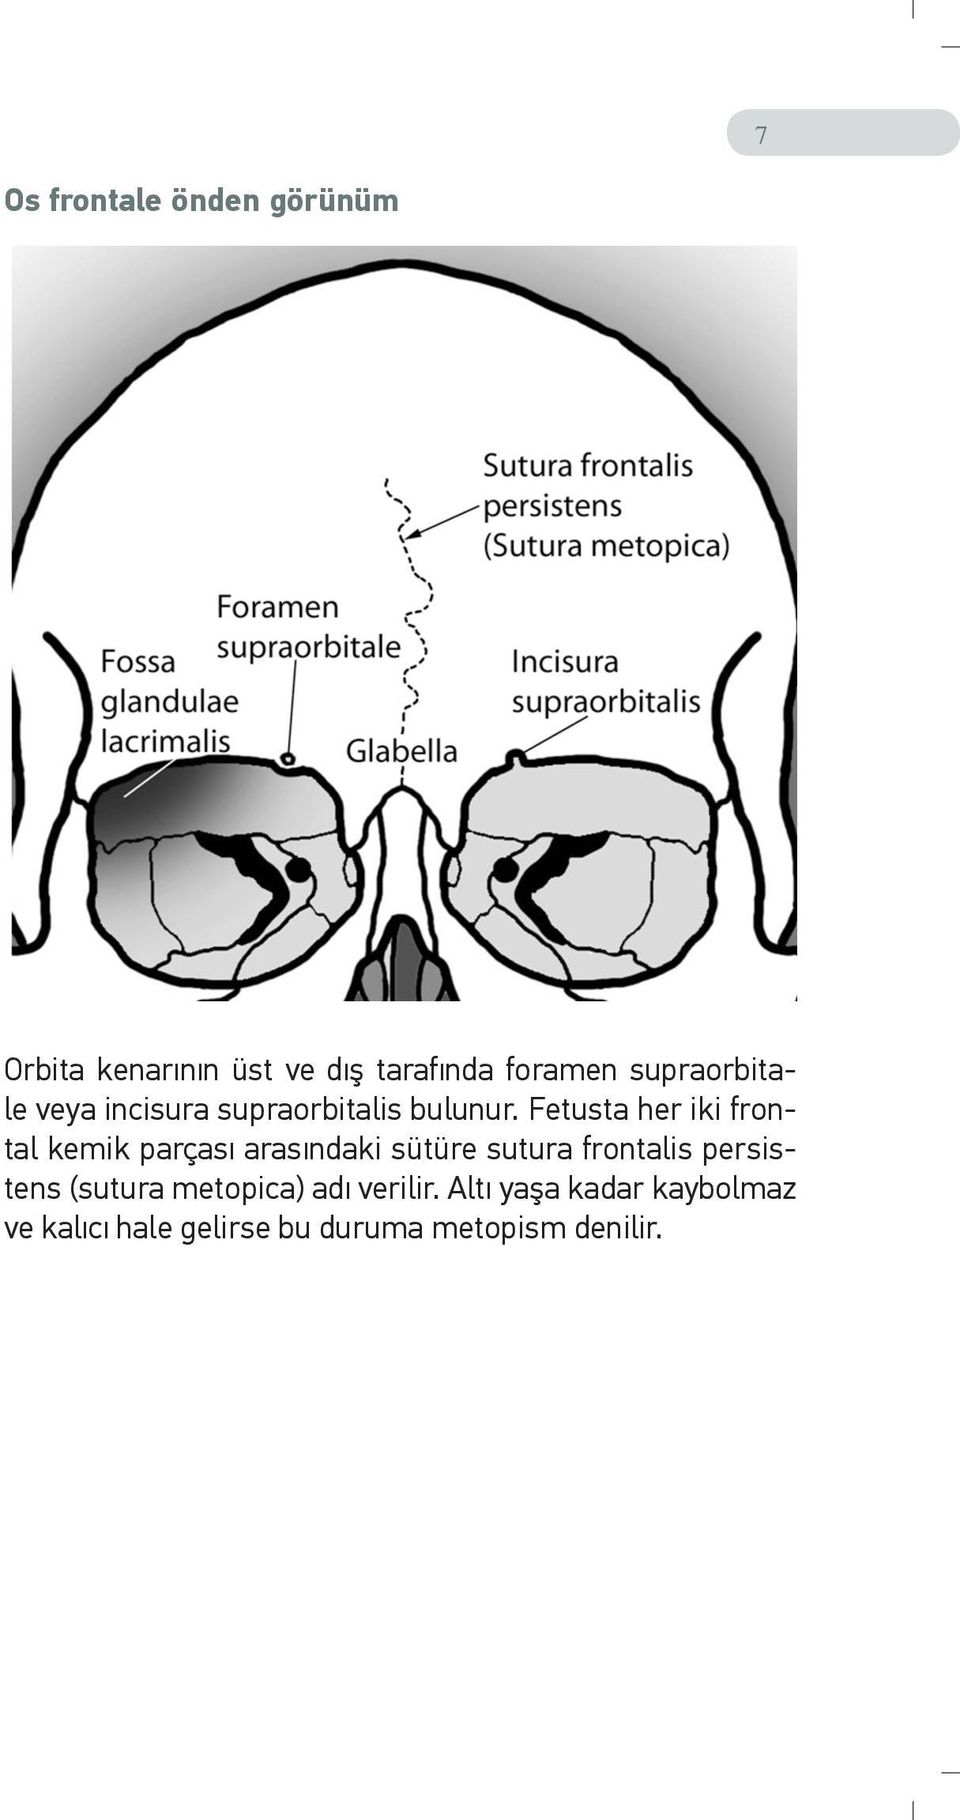 Fetusta her iki frontal kemik parçası arasındaki sütüre sutura frontalis